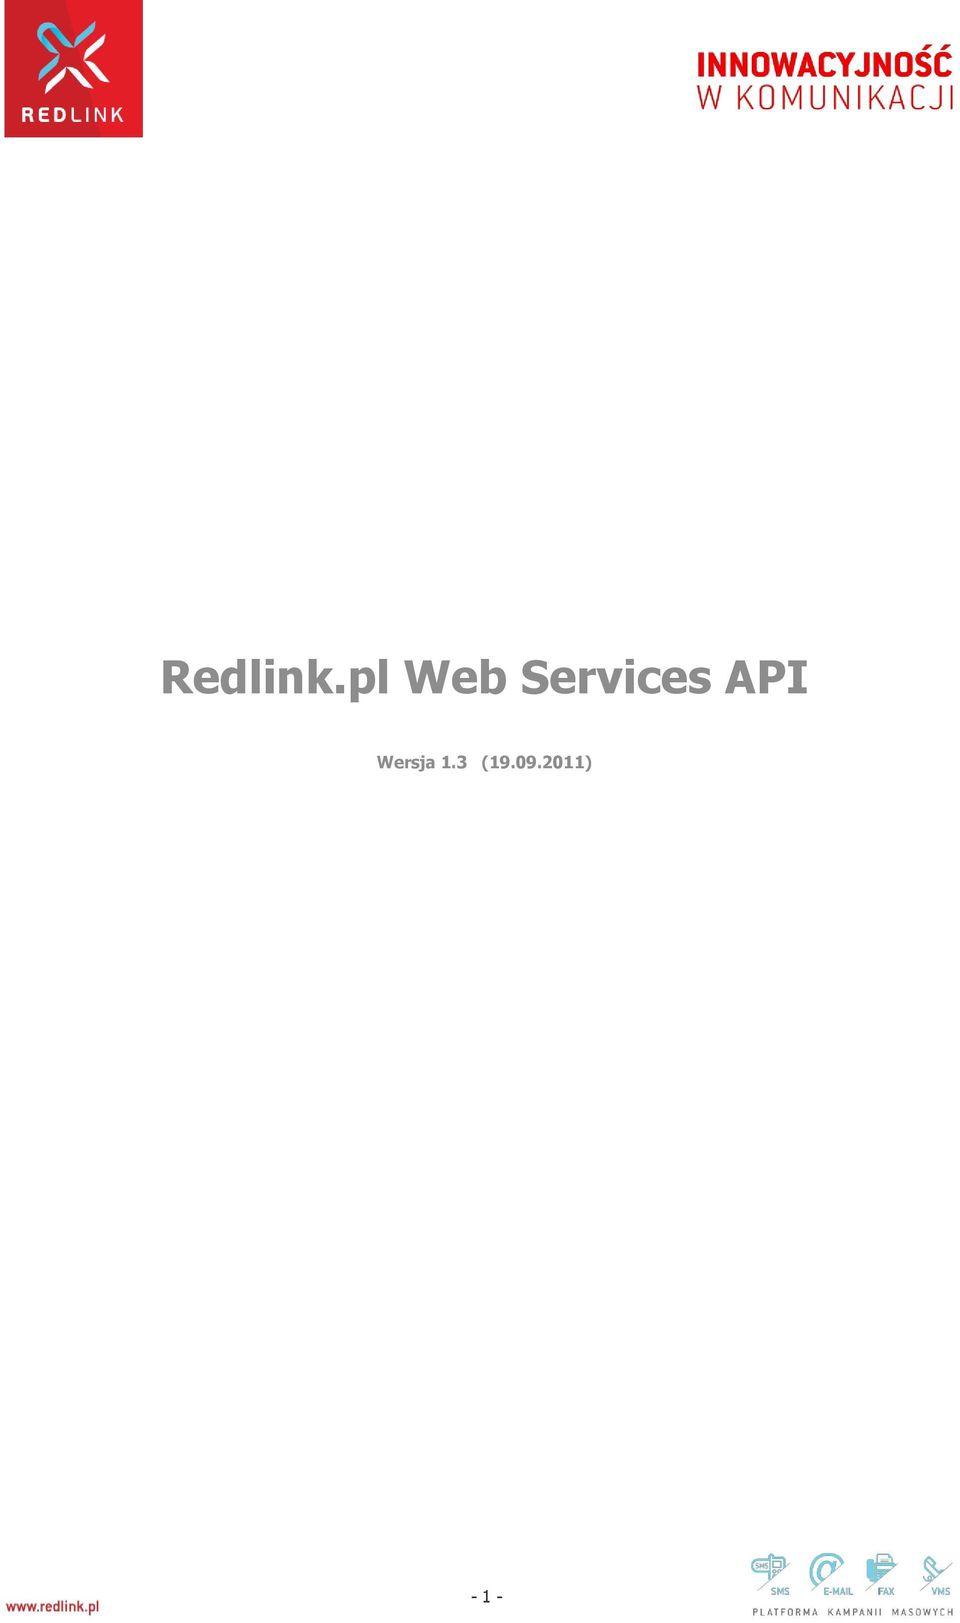 Services API